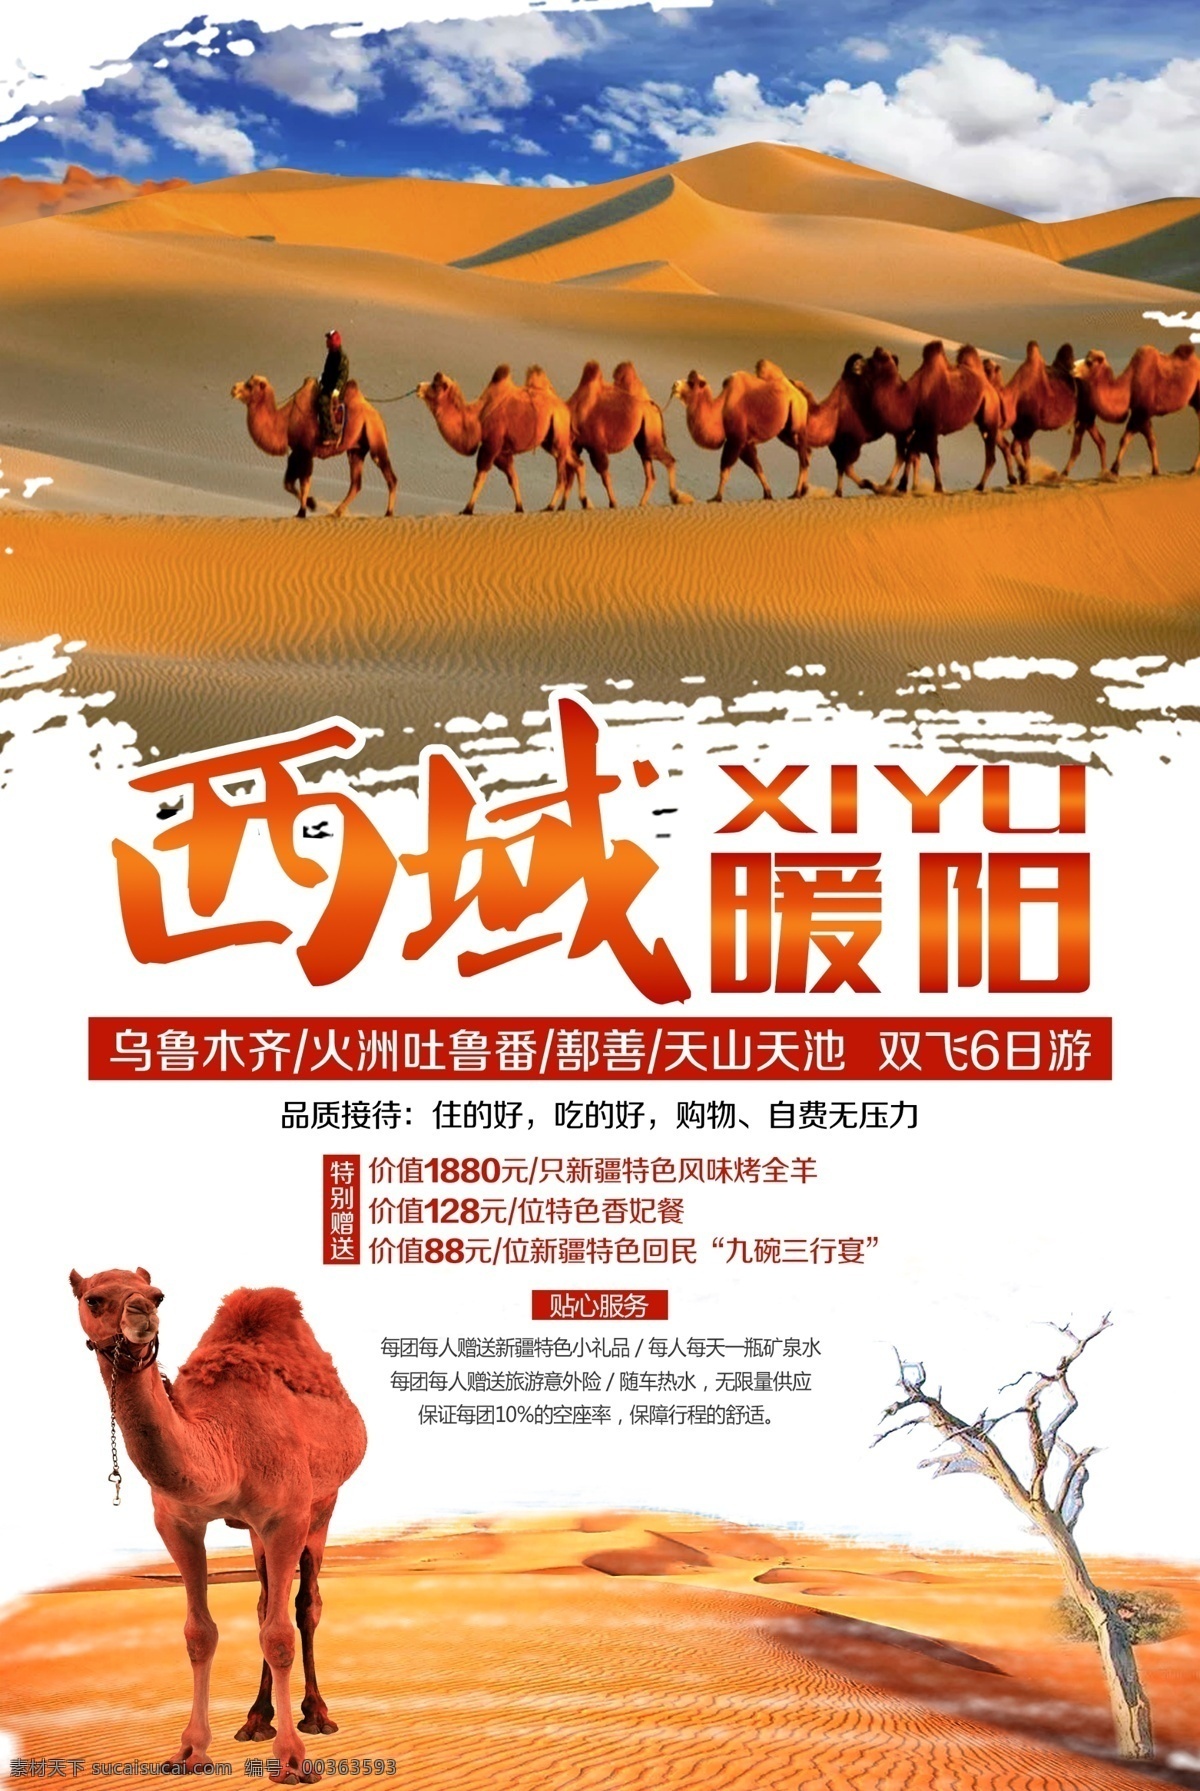 西域暖阳 新疆 旅游 沙漠 骆驼 骆驼队 吐鲁番